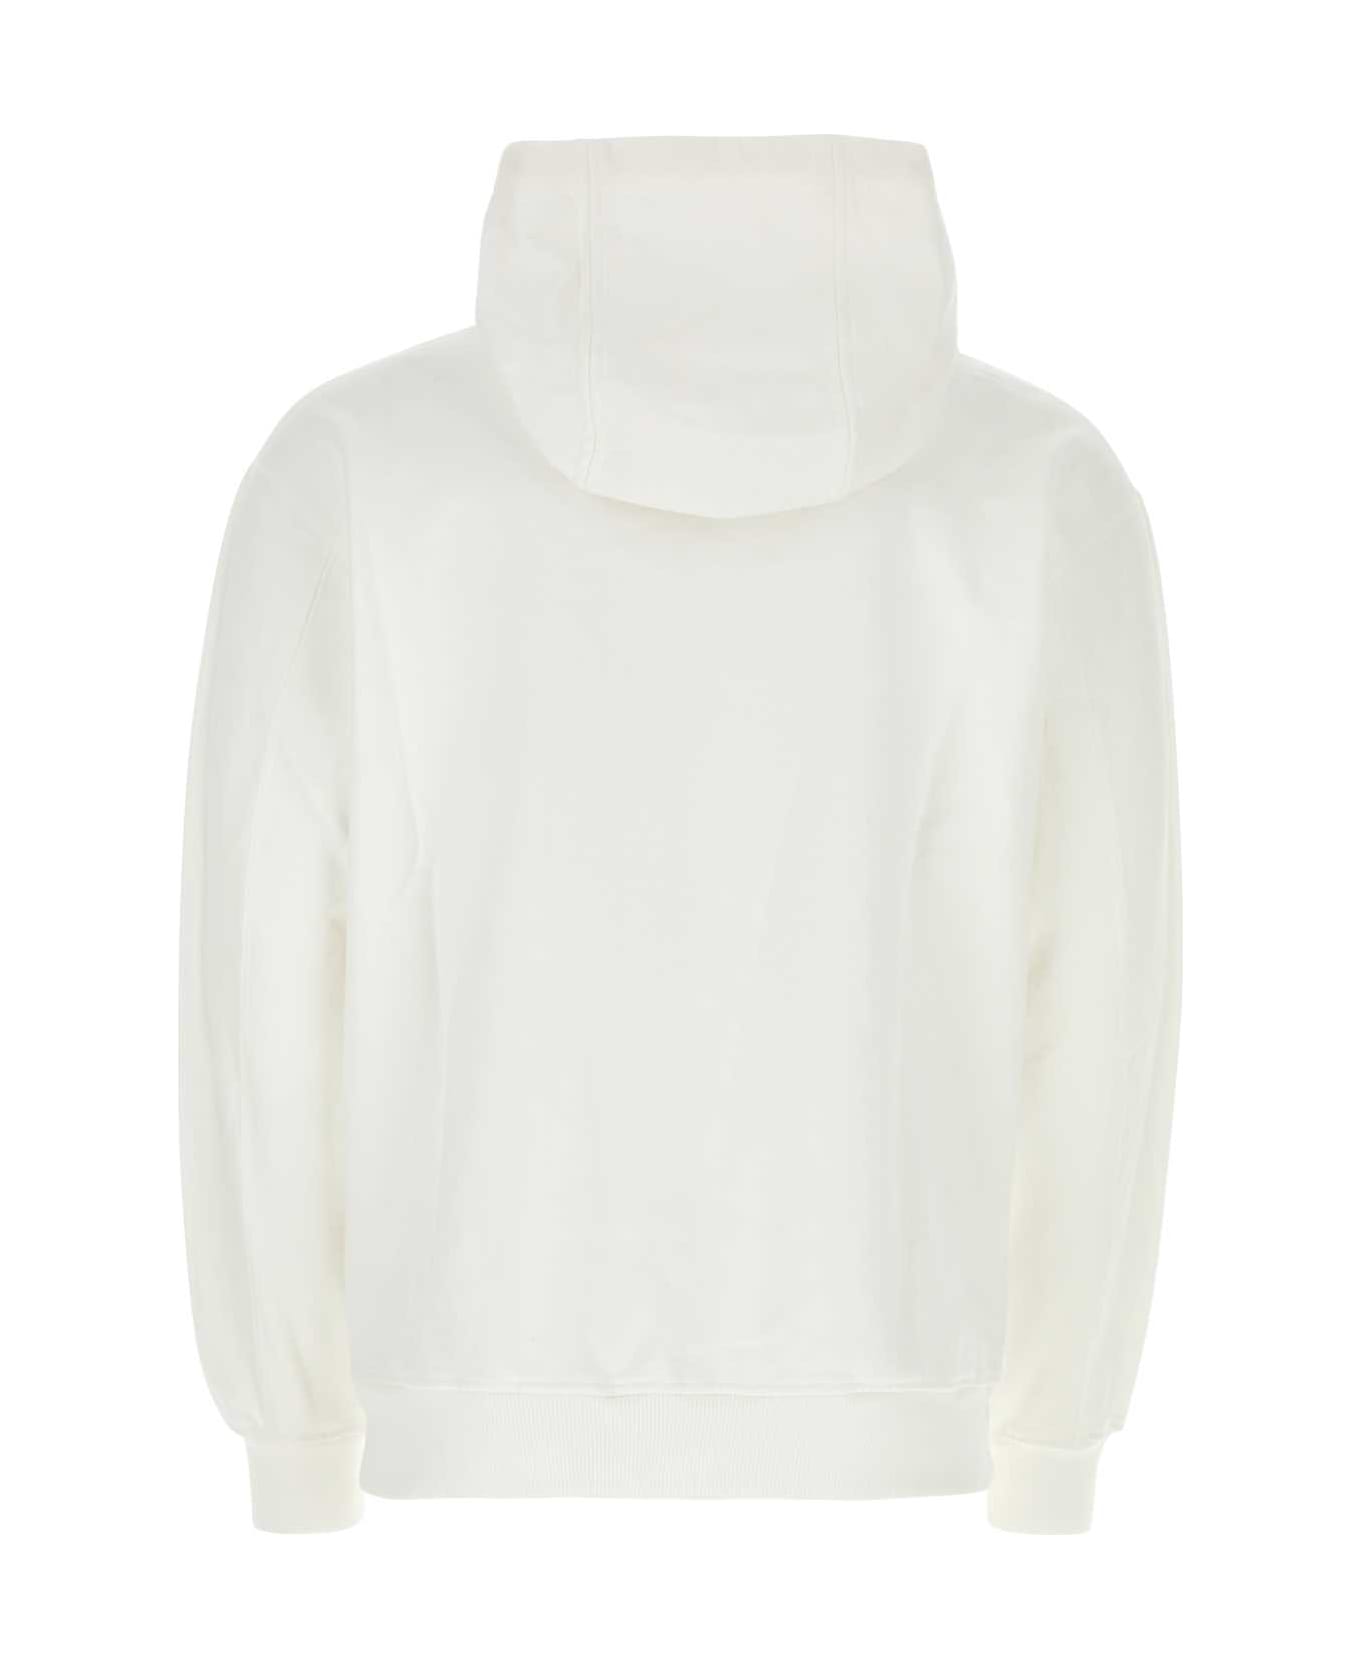 Casablanca White Cotton Sweatshirt - TENNISCLUBICONPASTELLE